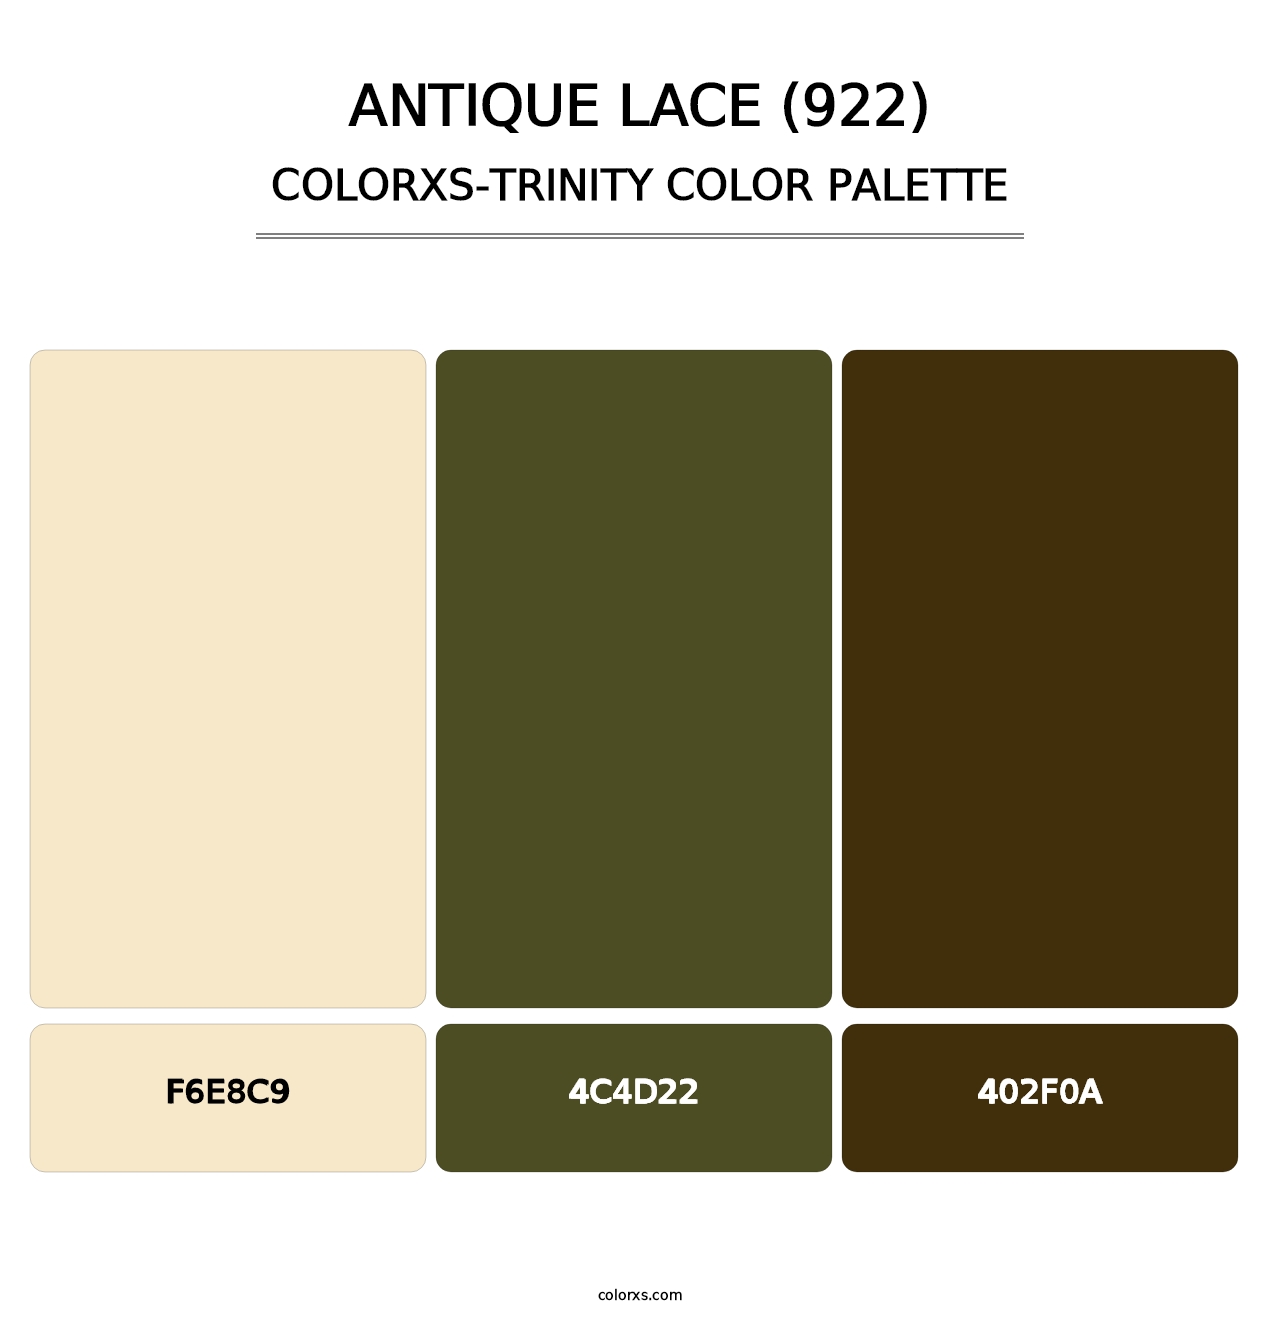 Antique Lace (922) - Colorxs Trinity Palette